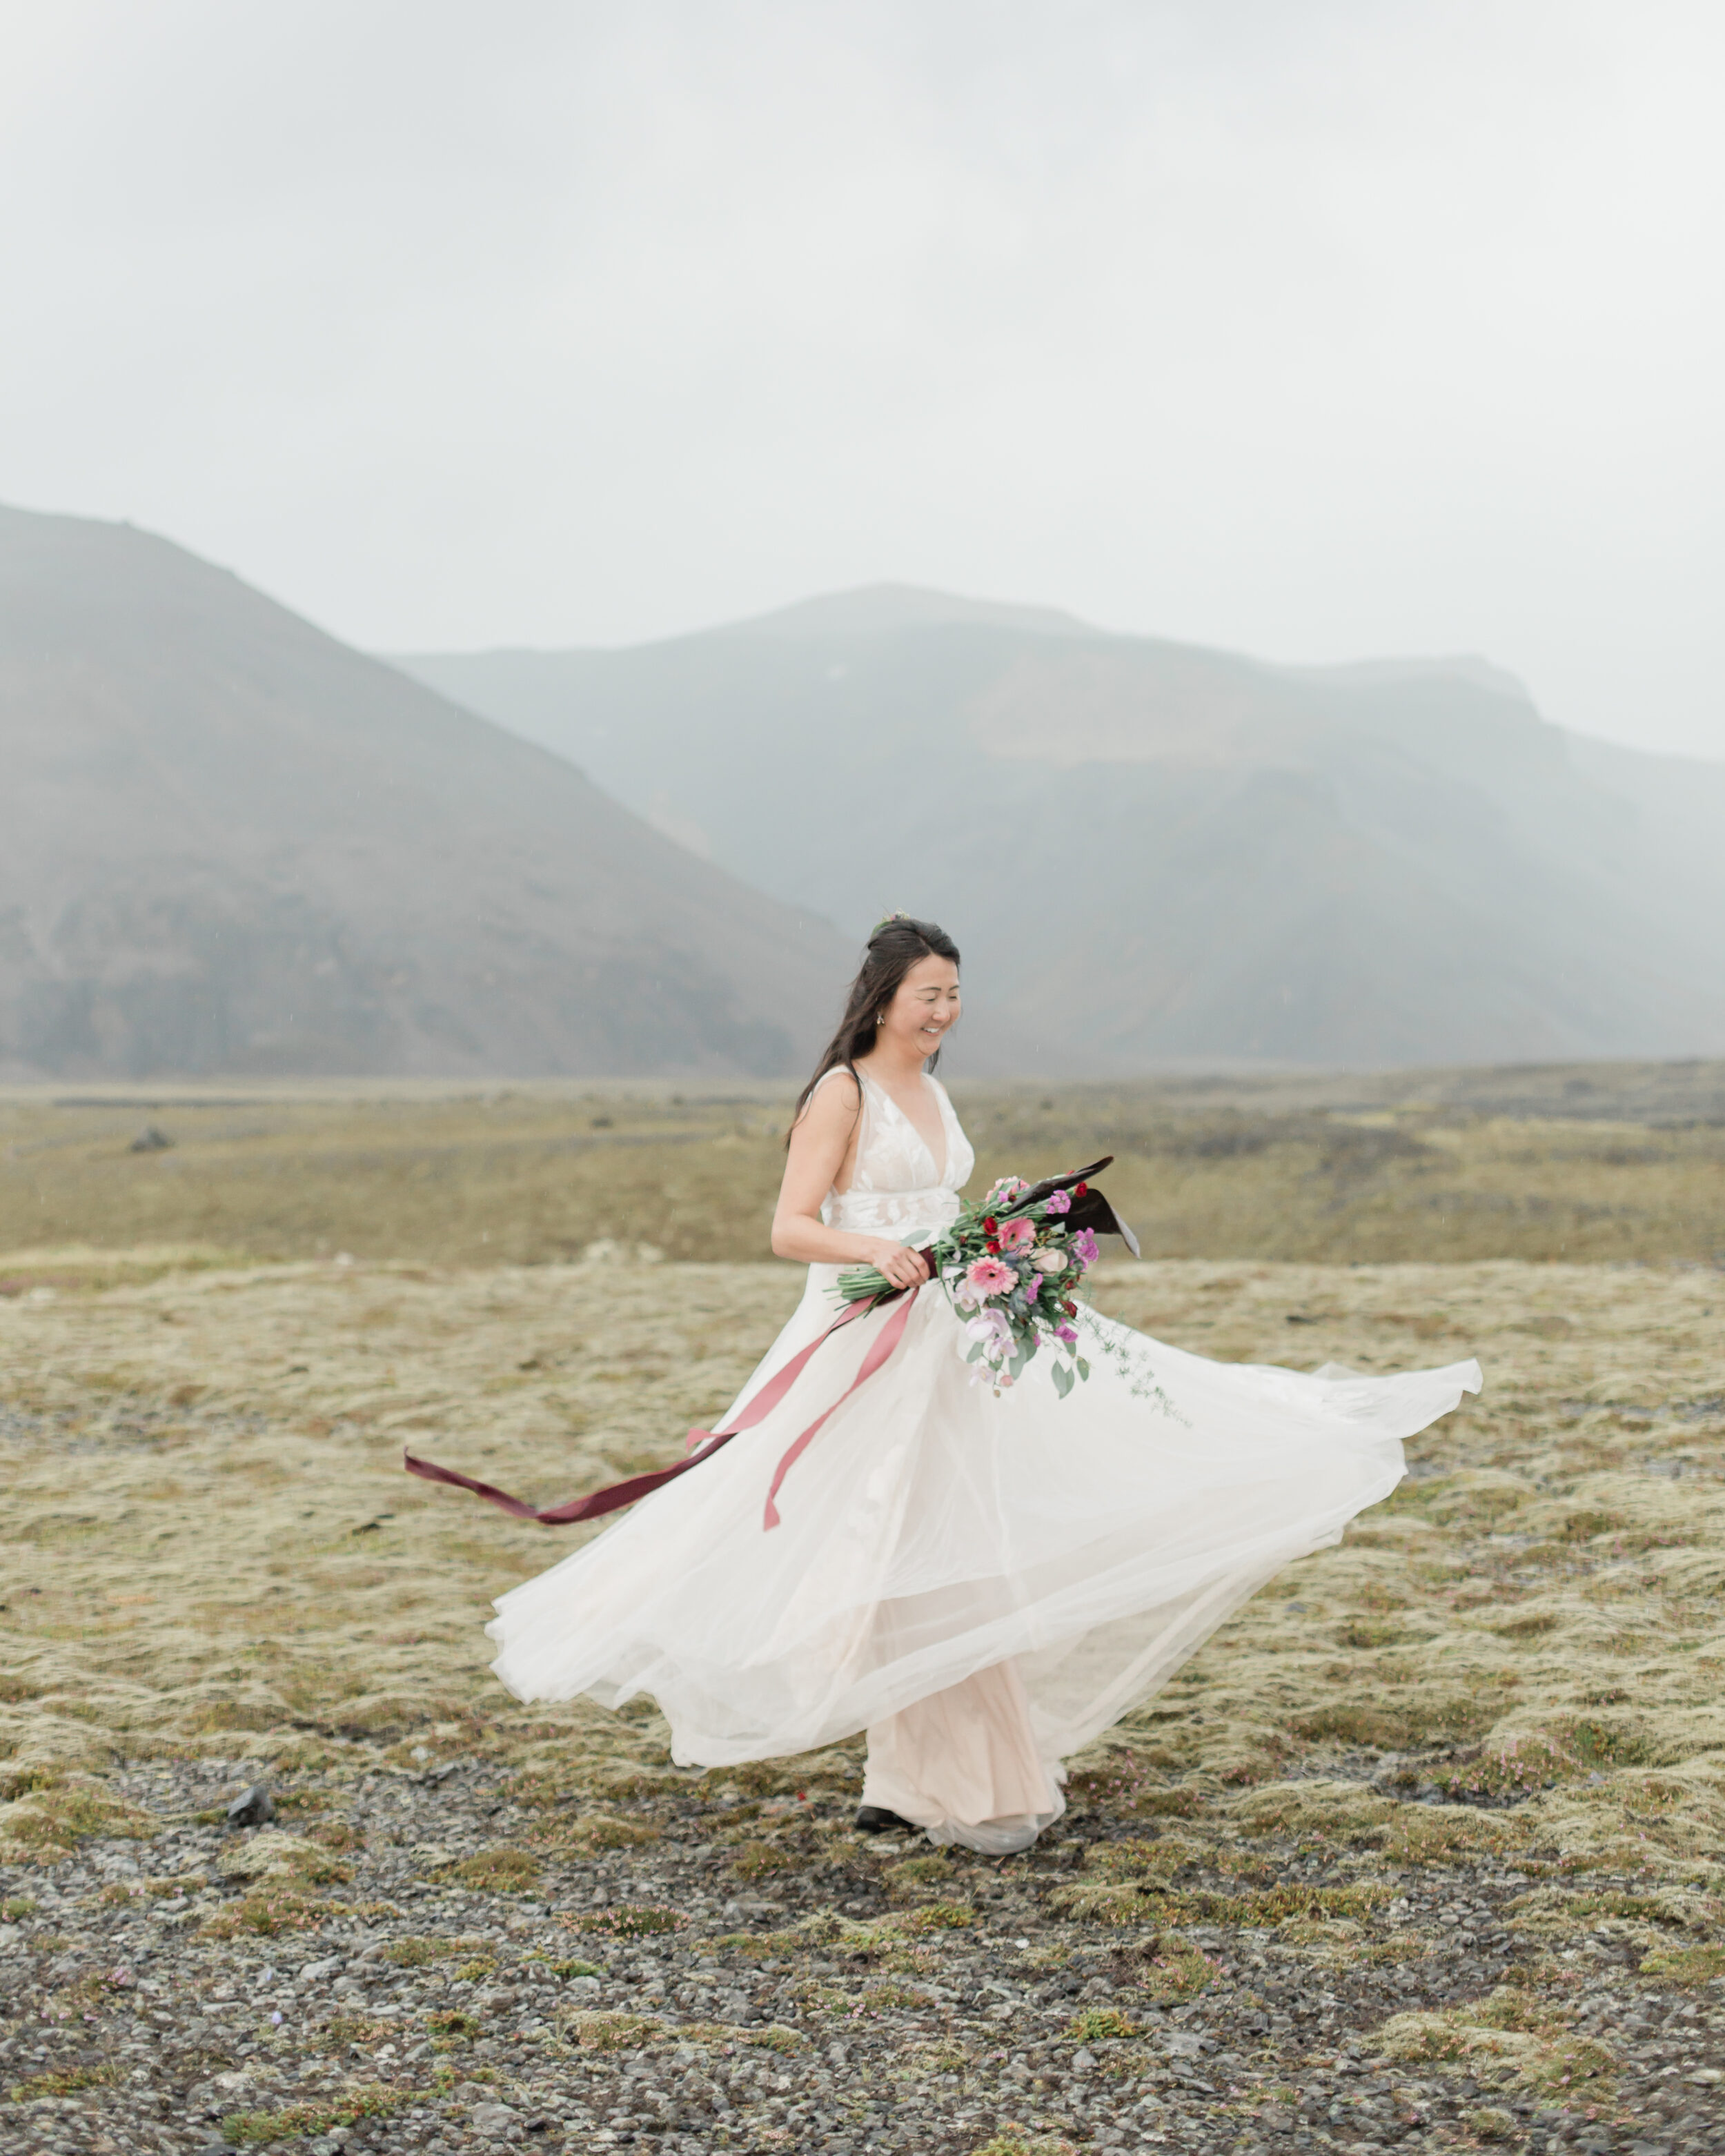 A bride twirls in her wedding dress in a field in Iceland.